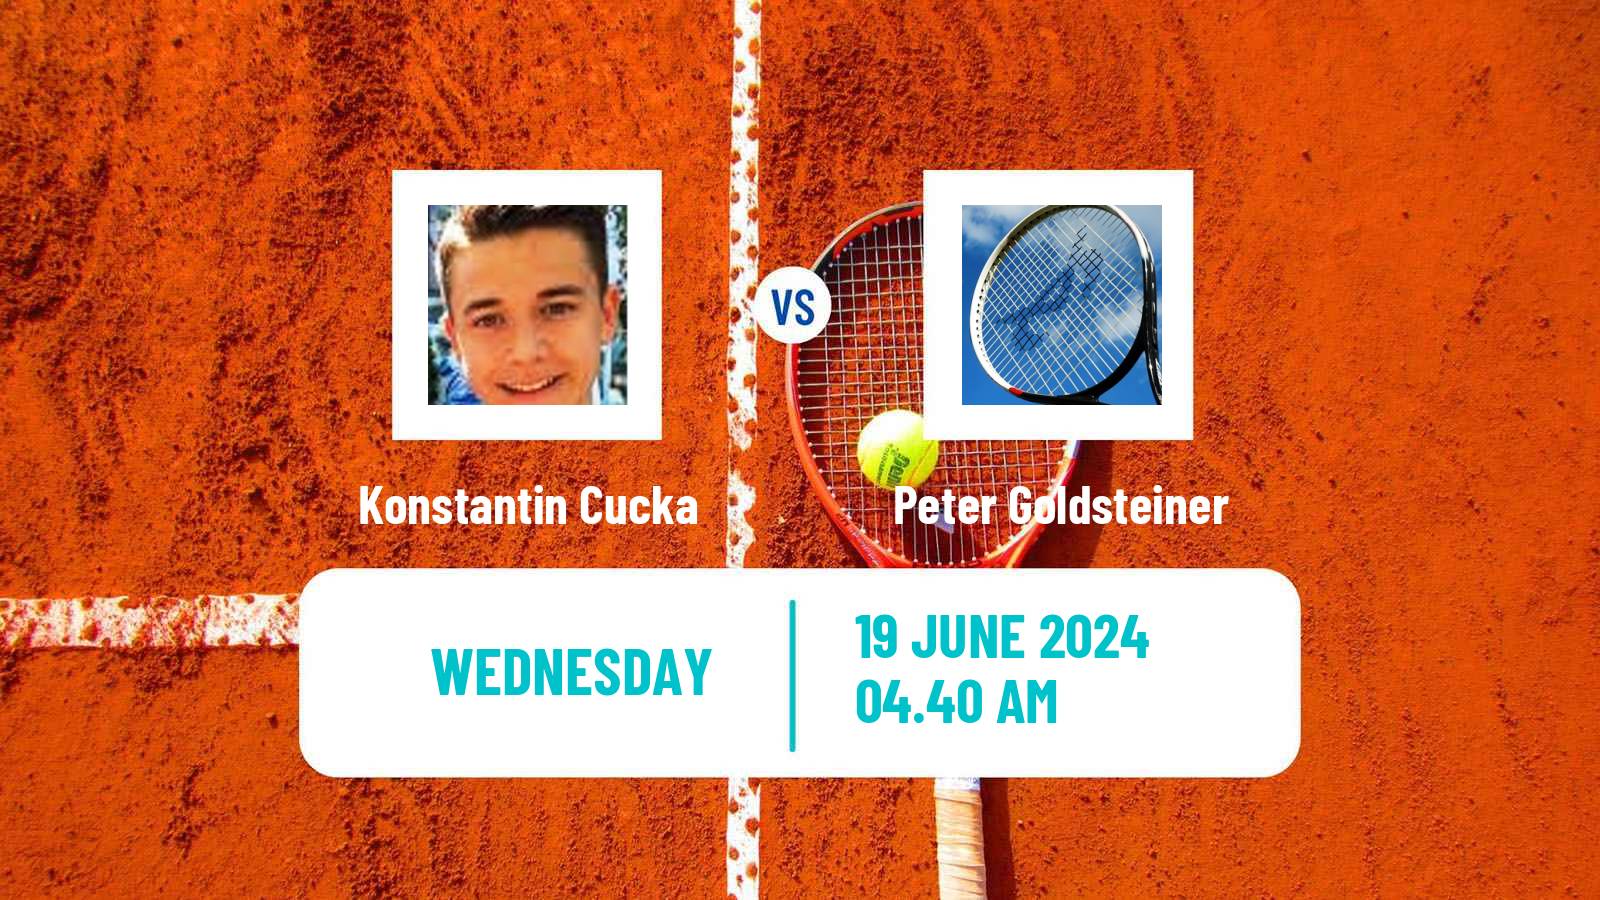 Tennis ITF M15 Saarlouis Men Konstantin Cucka - Peter Goldsteiner